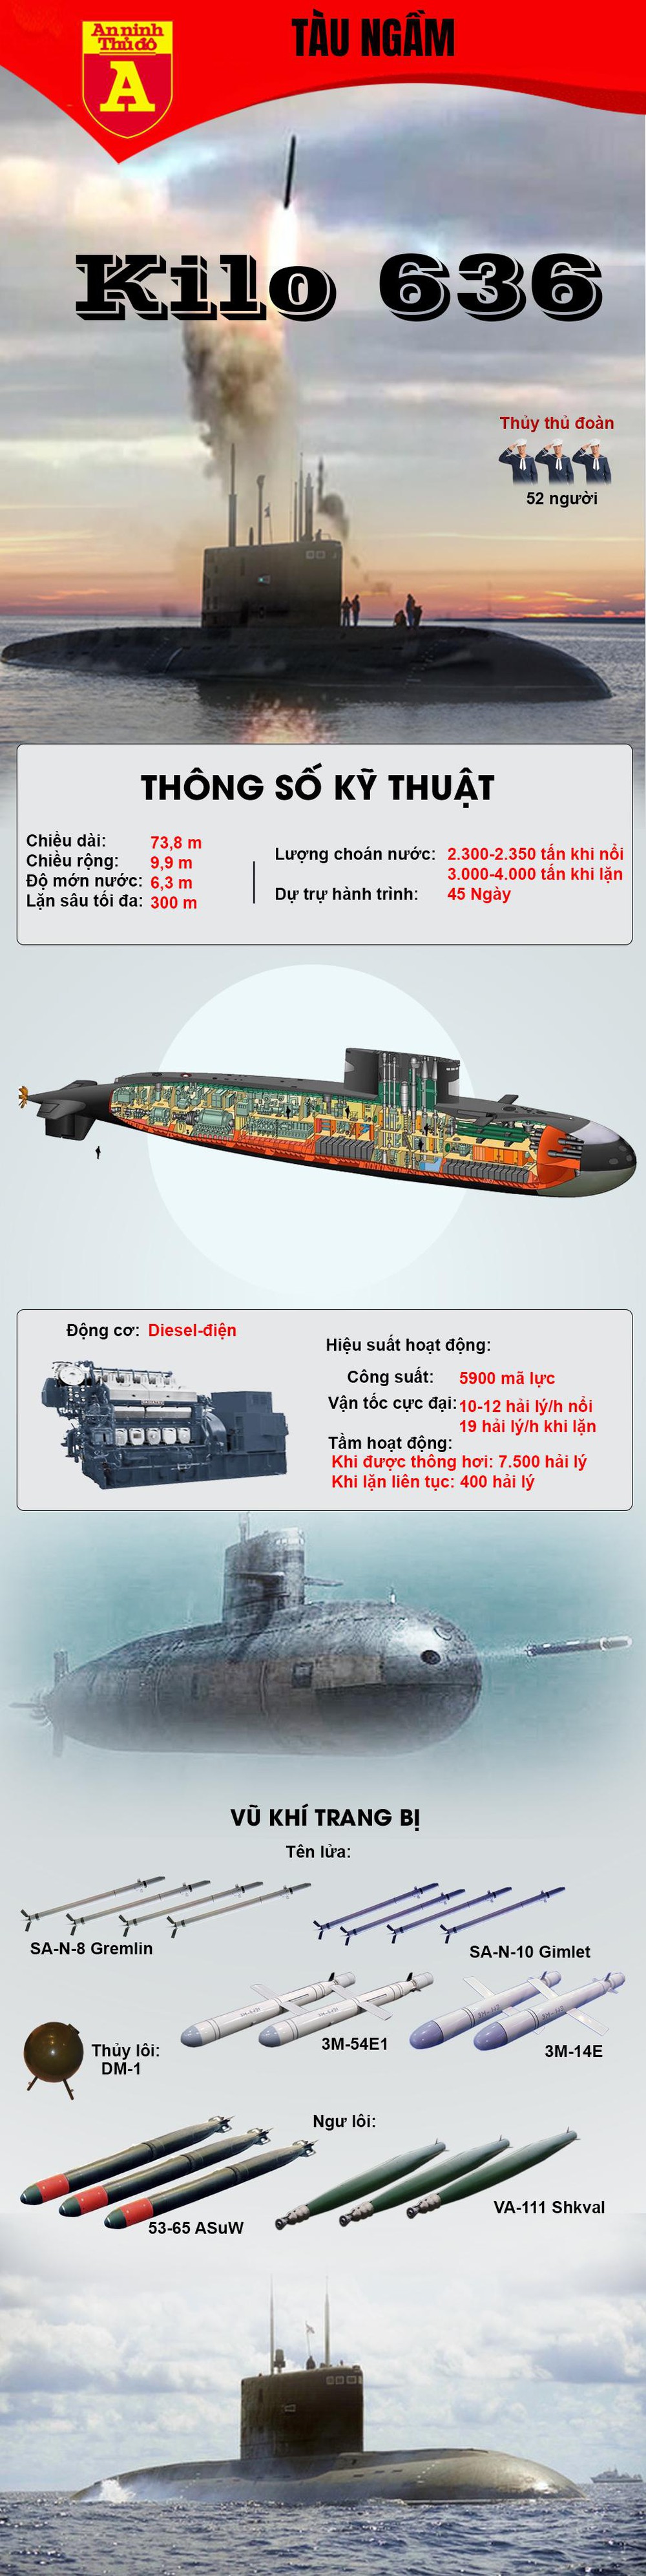 Khả năng  tác chiến chống hạm và chống ngầm của tàu ngầm Kilo 636 - Ảnh 1